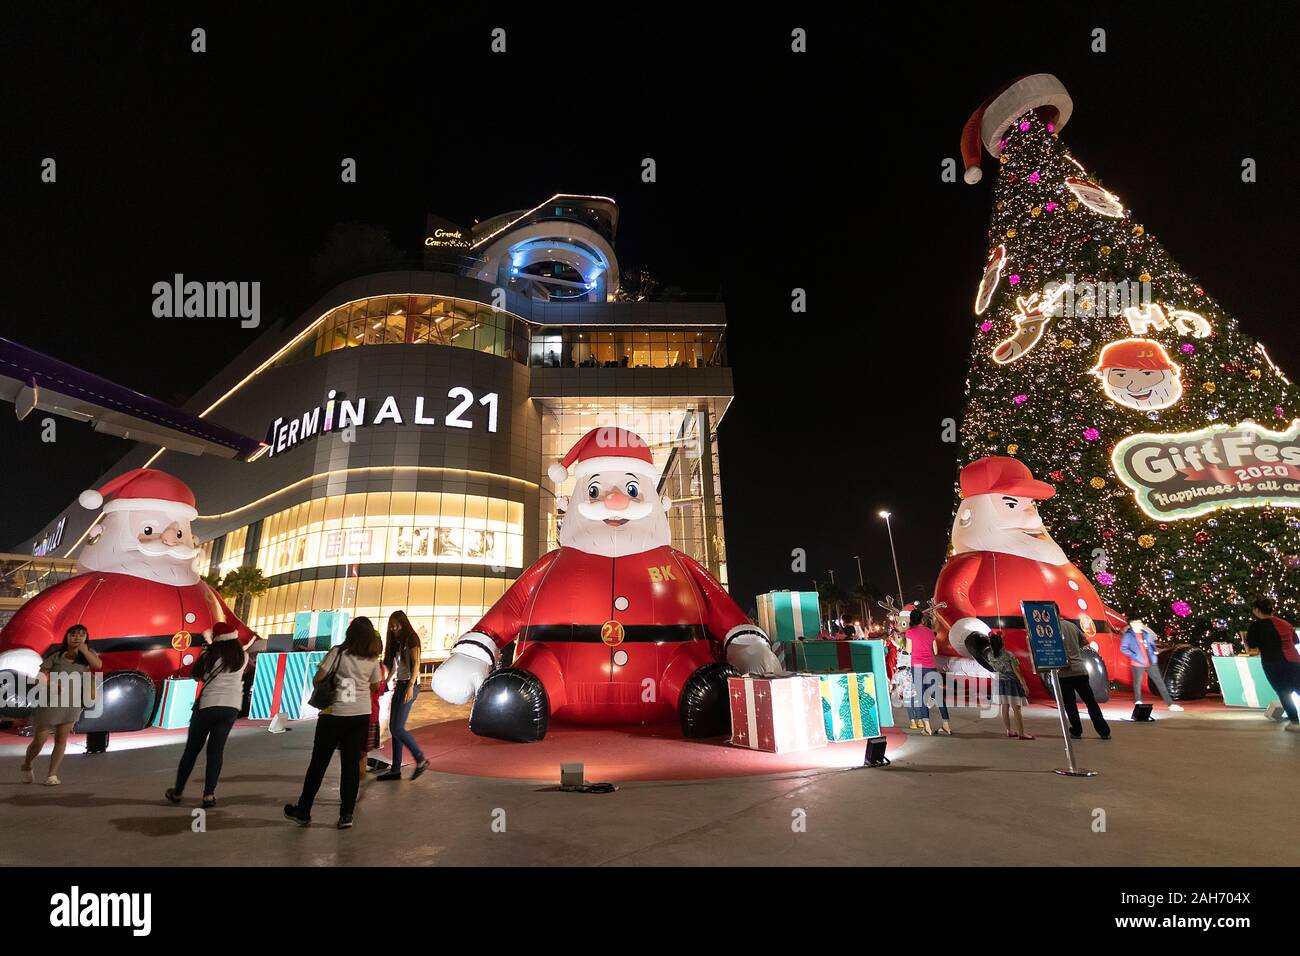 PATTAYA, THAÏLANDE - 25 décembre 2019 : les gens apprécient pour les saisons accueil en face de la borne21 centre commercial avec grande poupée Père Noël Banque D'Images